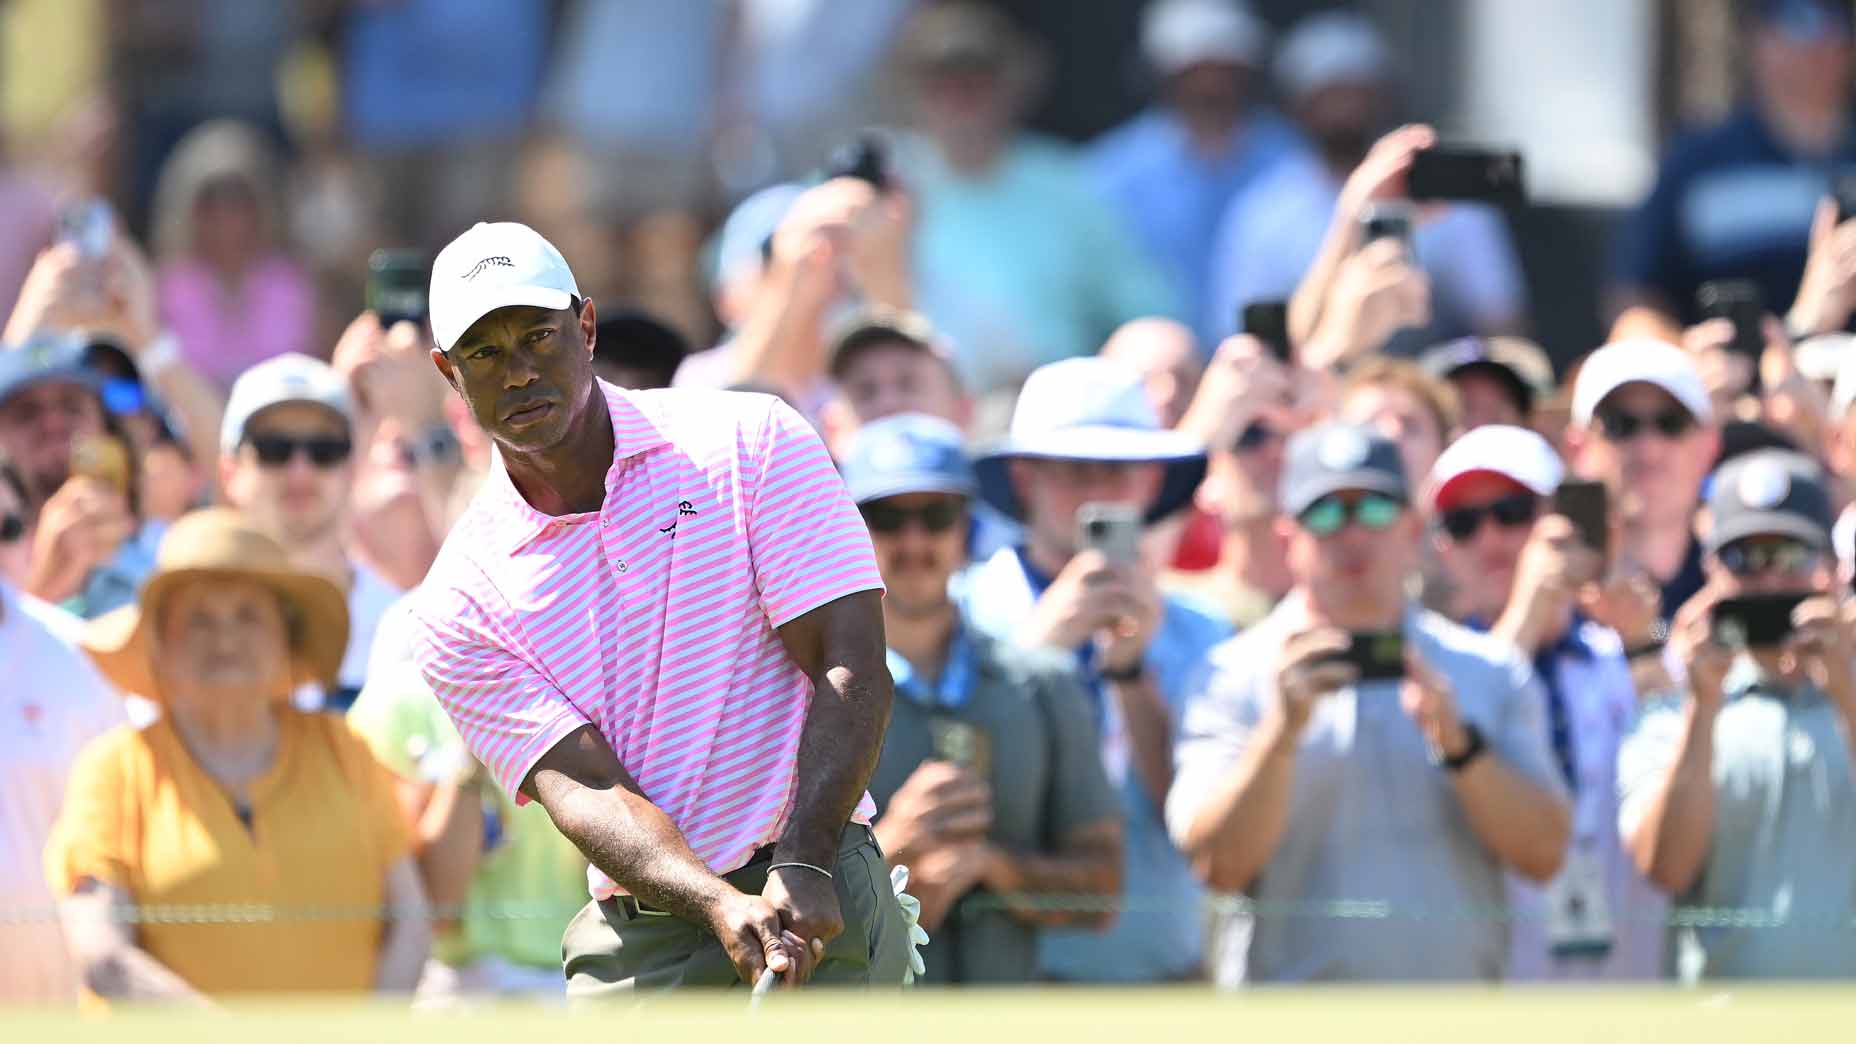 U.S. Open projected cut: Tiger Woods, Scottie Scheffler in danger of missing weekend